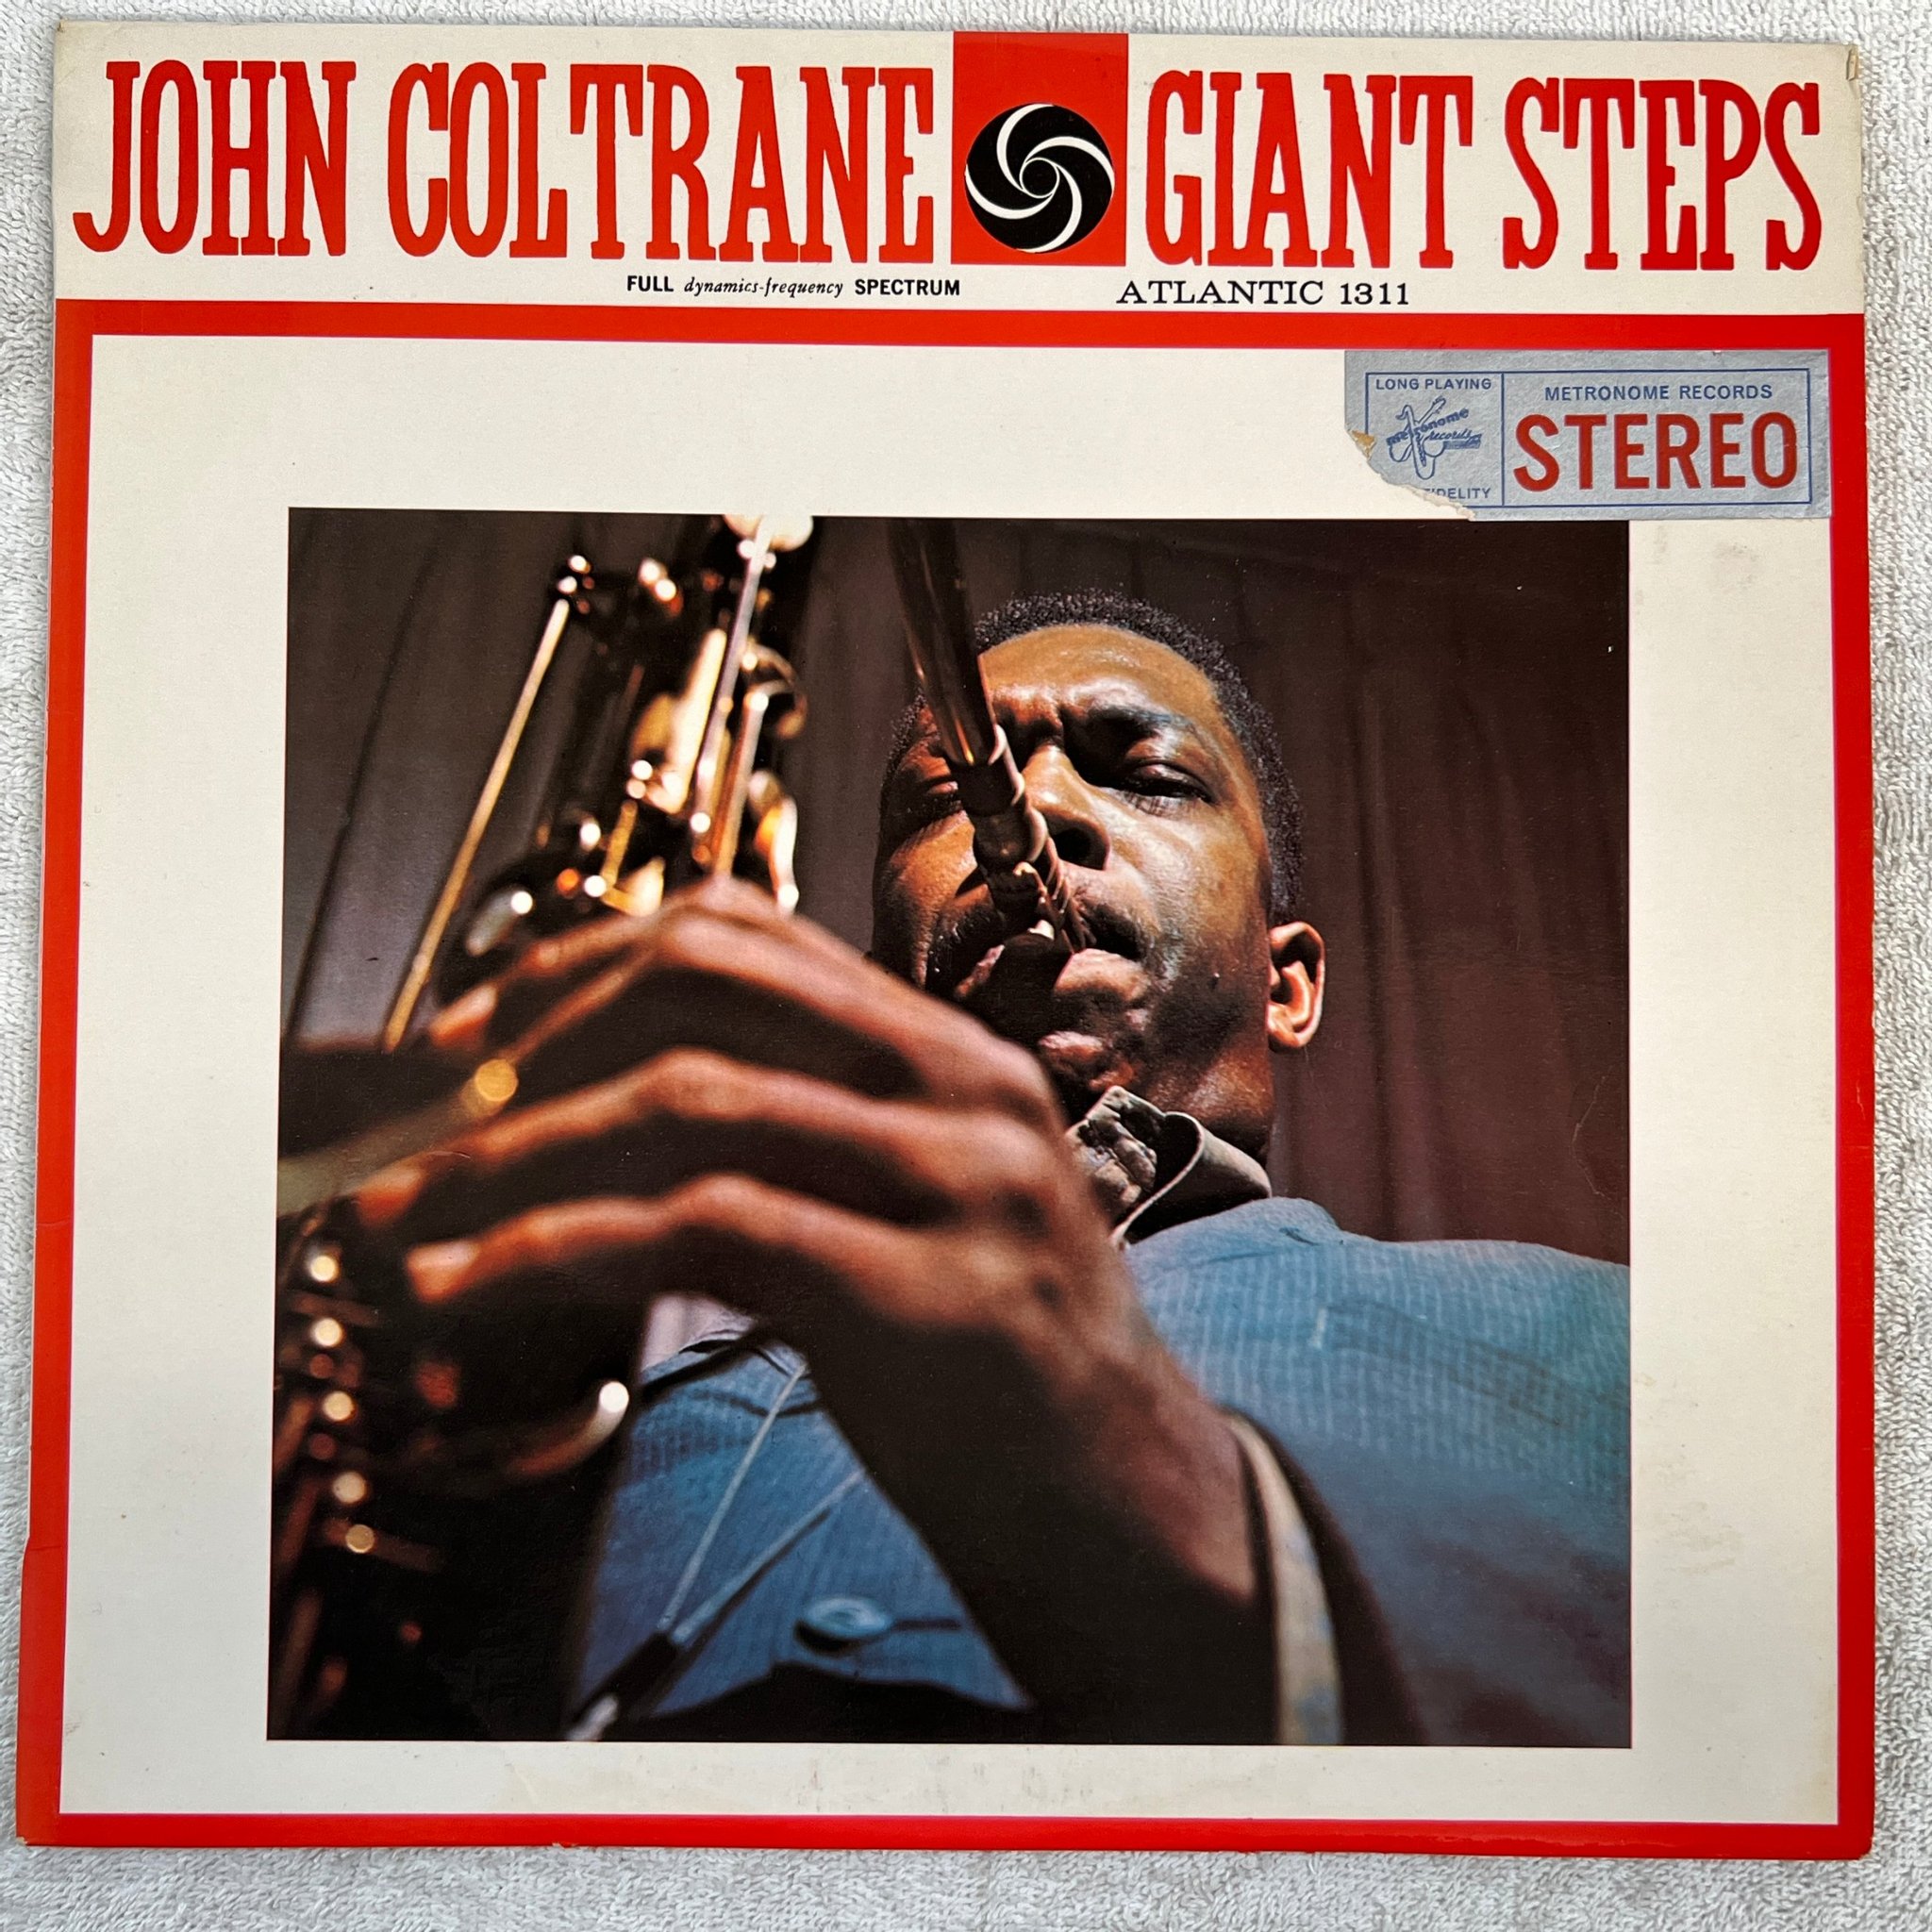 Omslagsbild för skivan JOHN COLTRANE giant steps LP Den ATLANTIC SD 1311 ** Masterpiece **